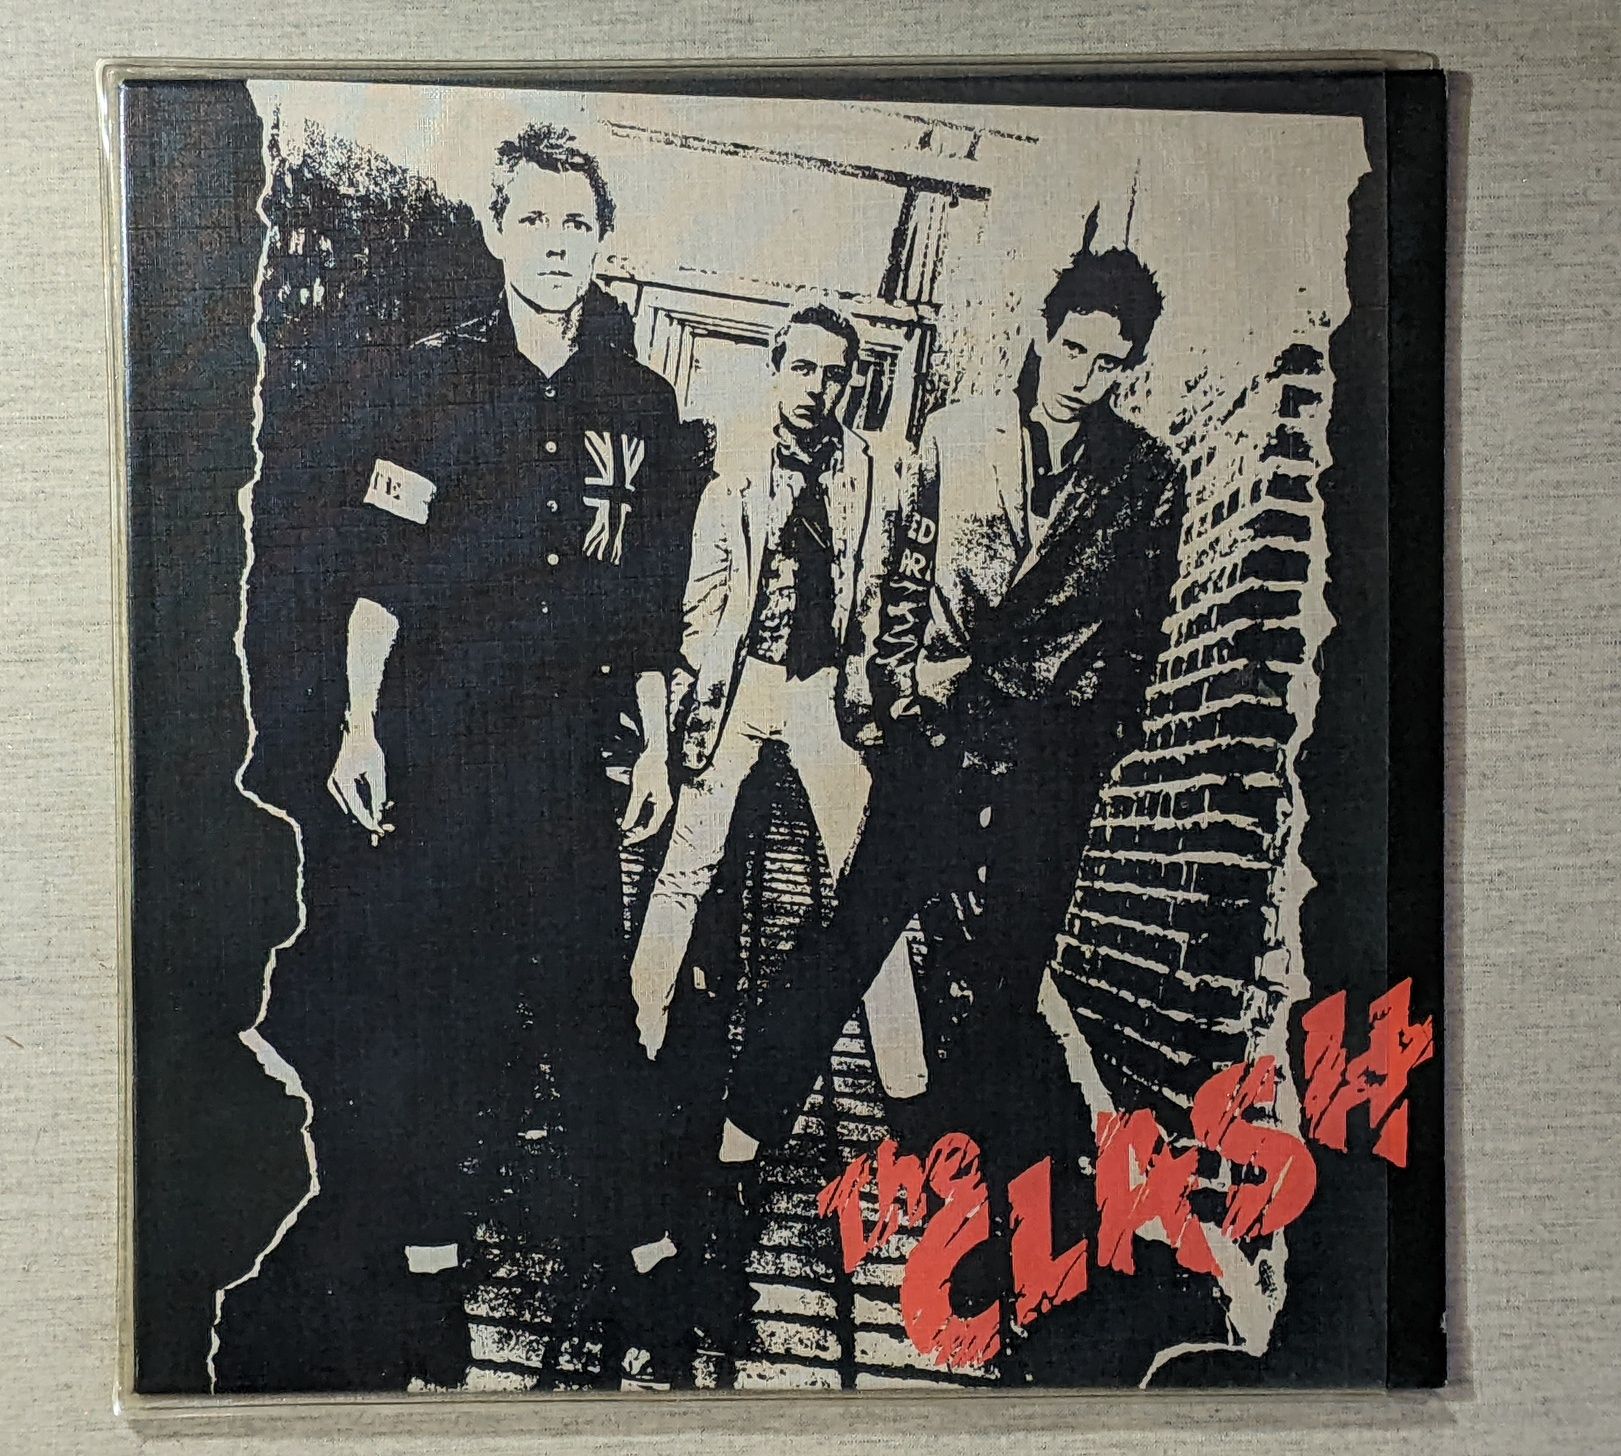 The clash vinyl, вініл, платівка, 1-st press (cbs 1977)